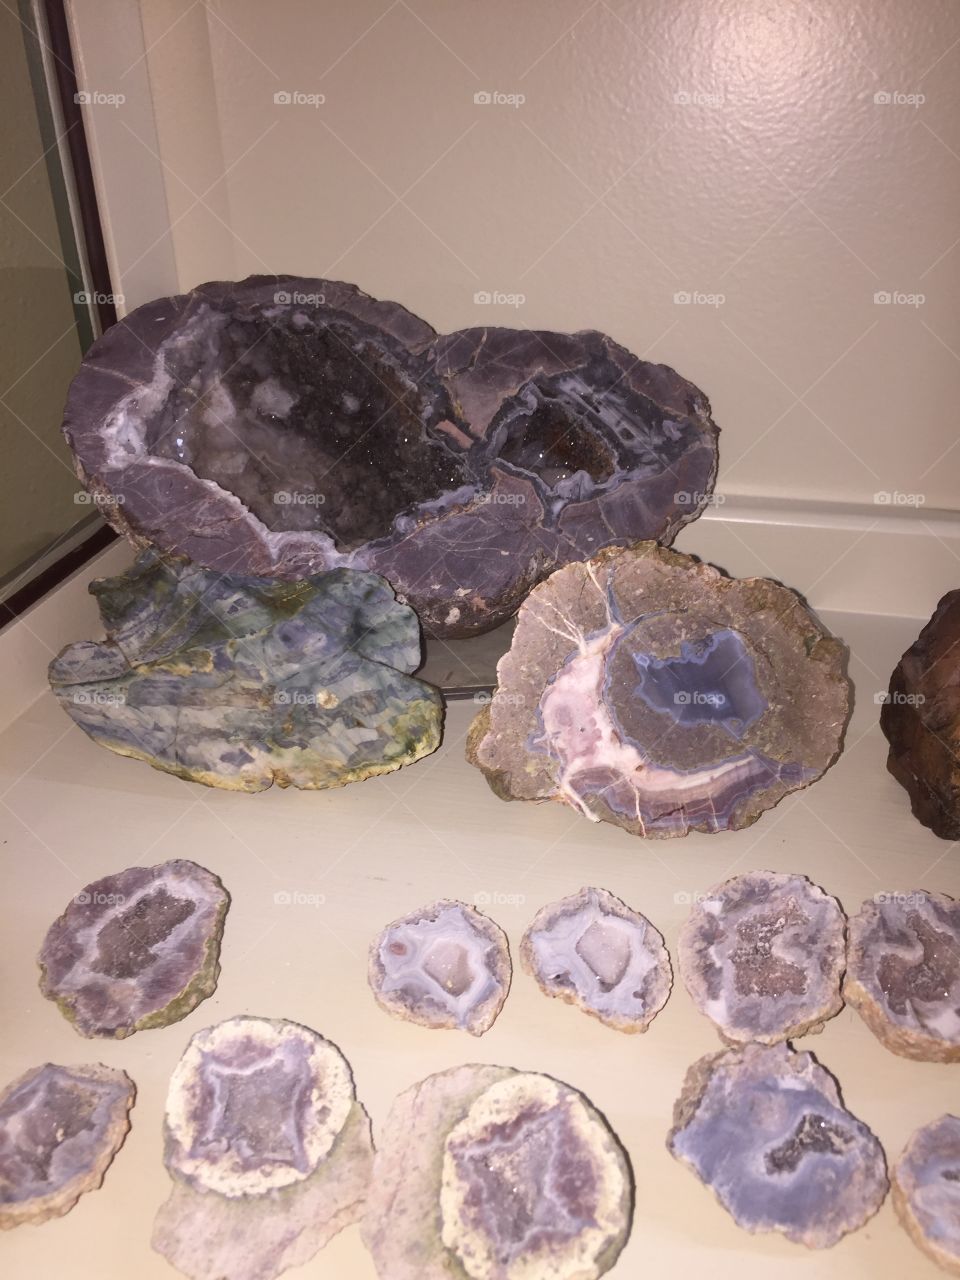 Geodes/ rocks